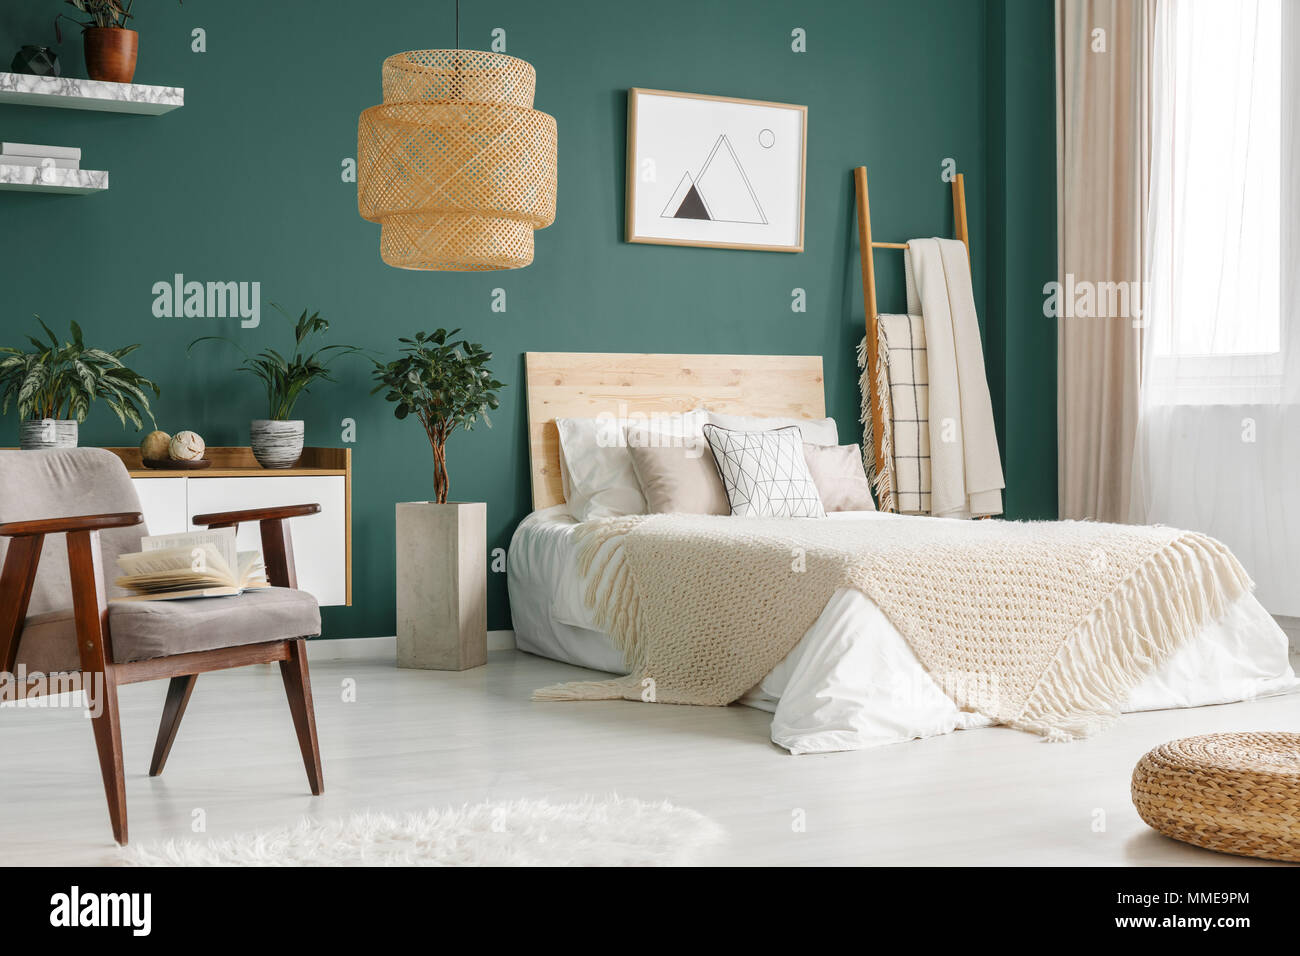 Grün Schlafzimmer mit King-Size-Bett, Topfpflanzen und großen, Korb Lampe  Stockfotografie - Alamy